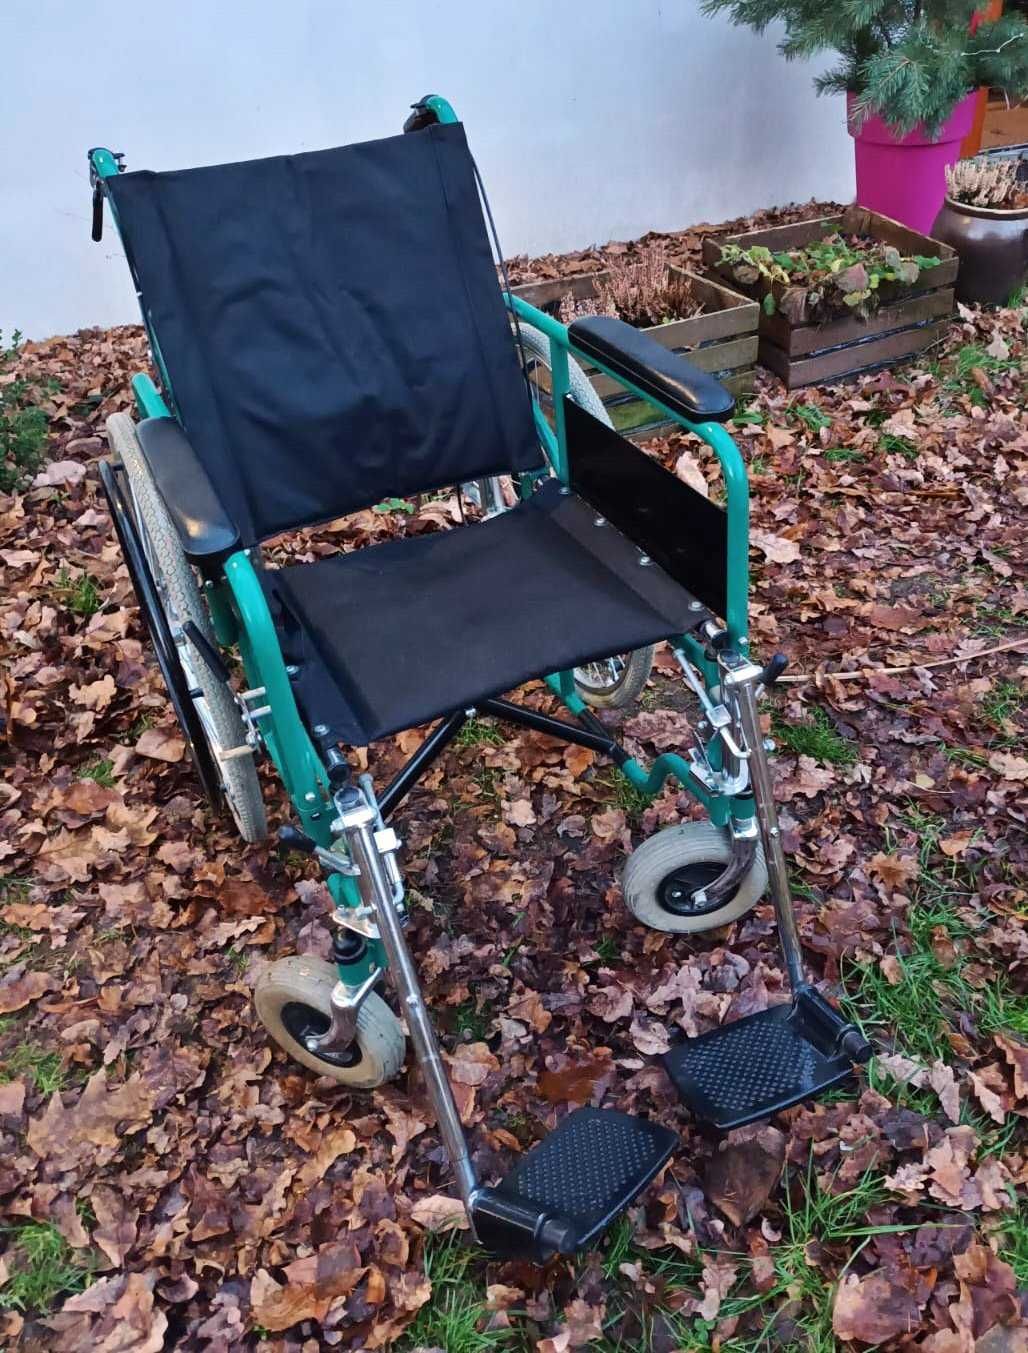 Wózek inwalidzki aluminiowy, składany, bardzo lekki. Mało używany